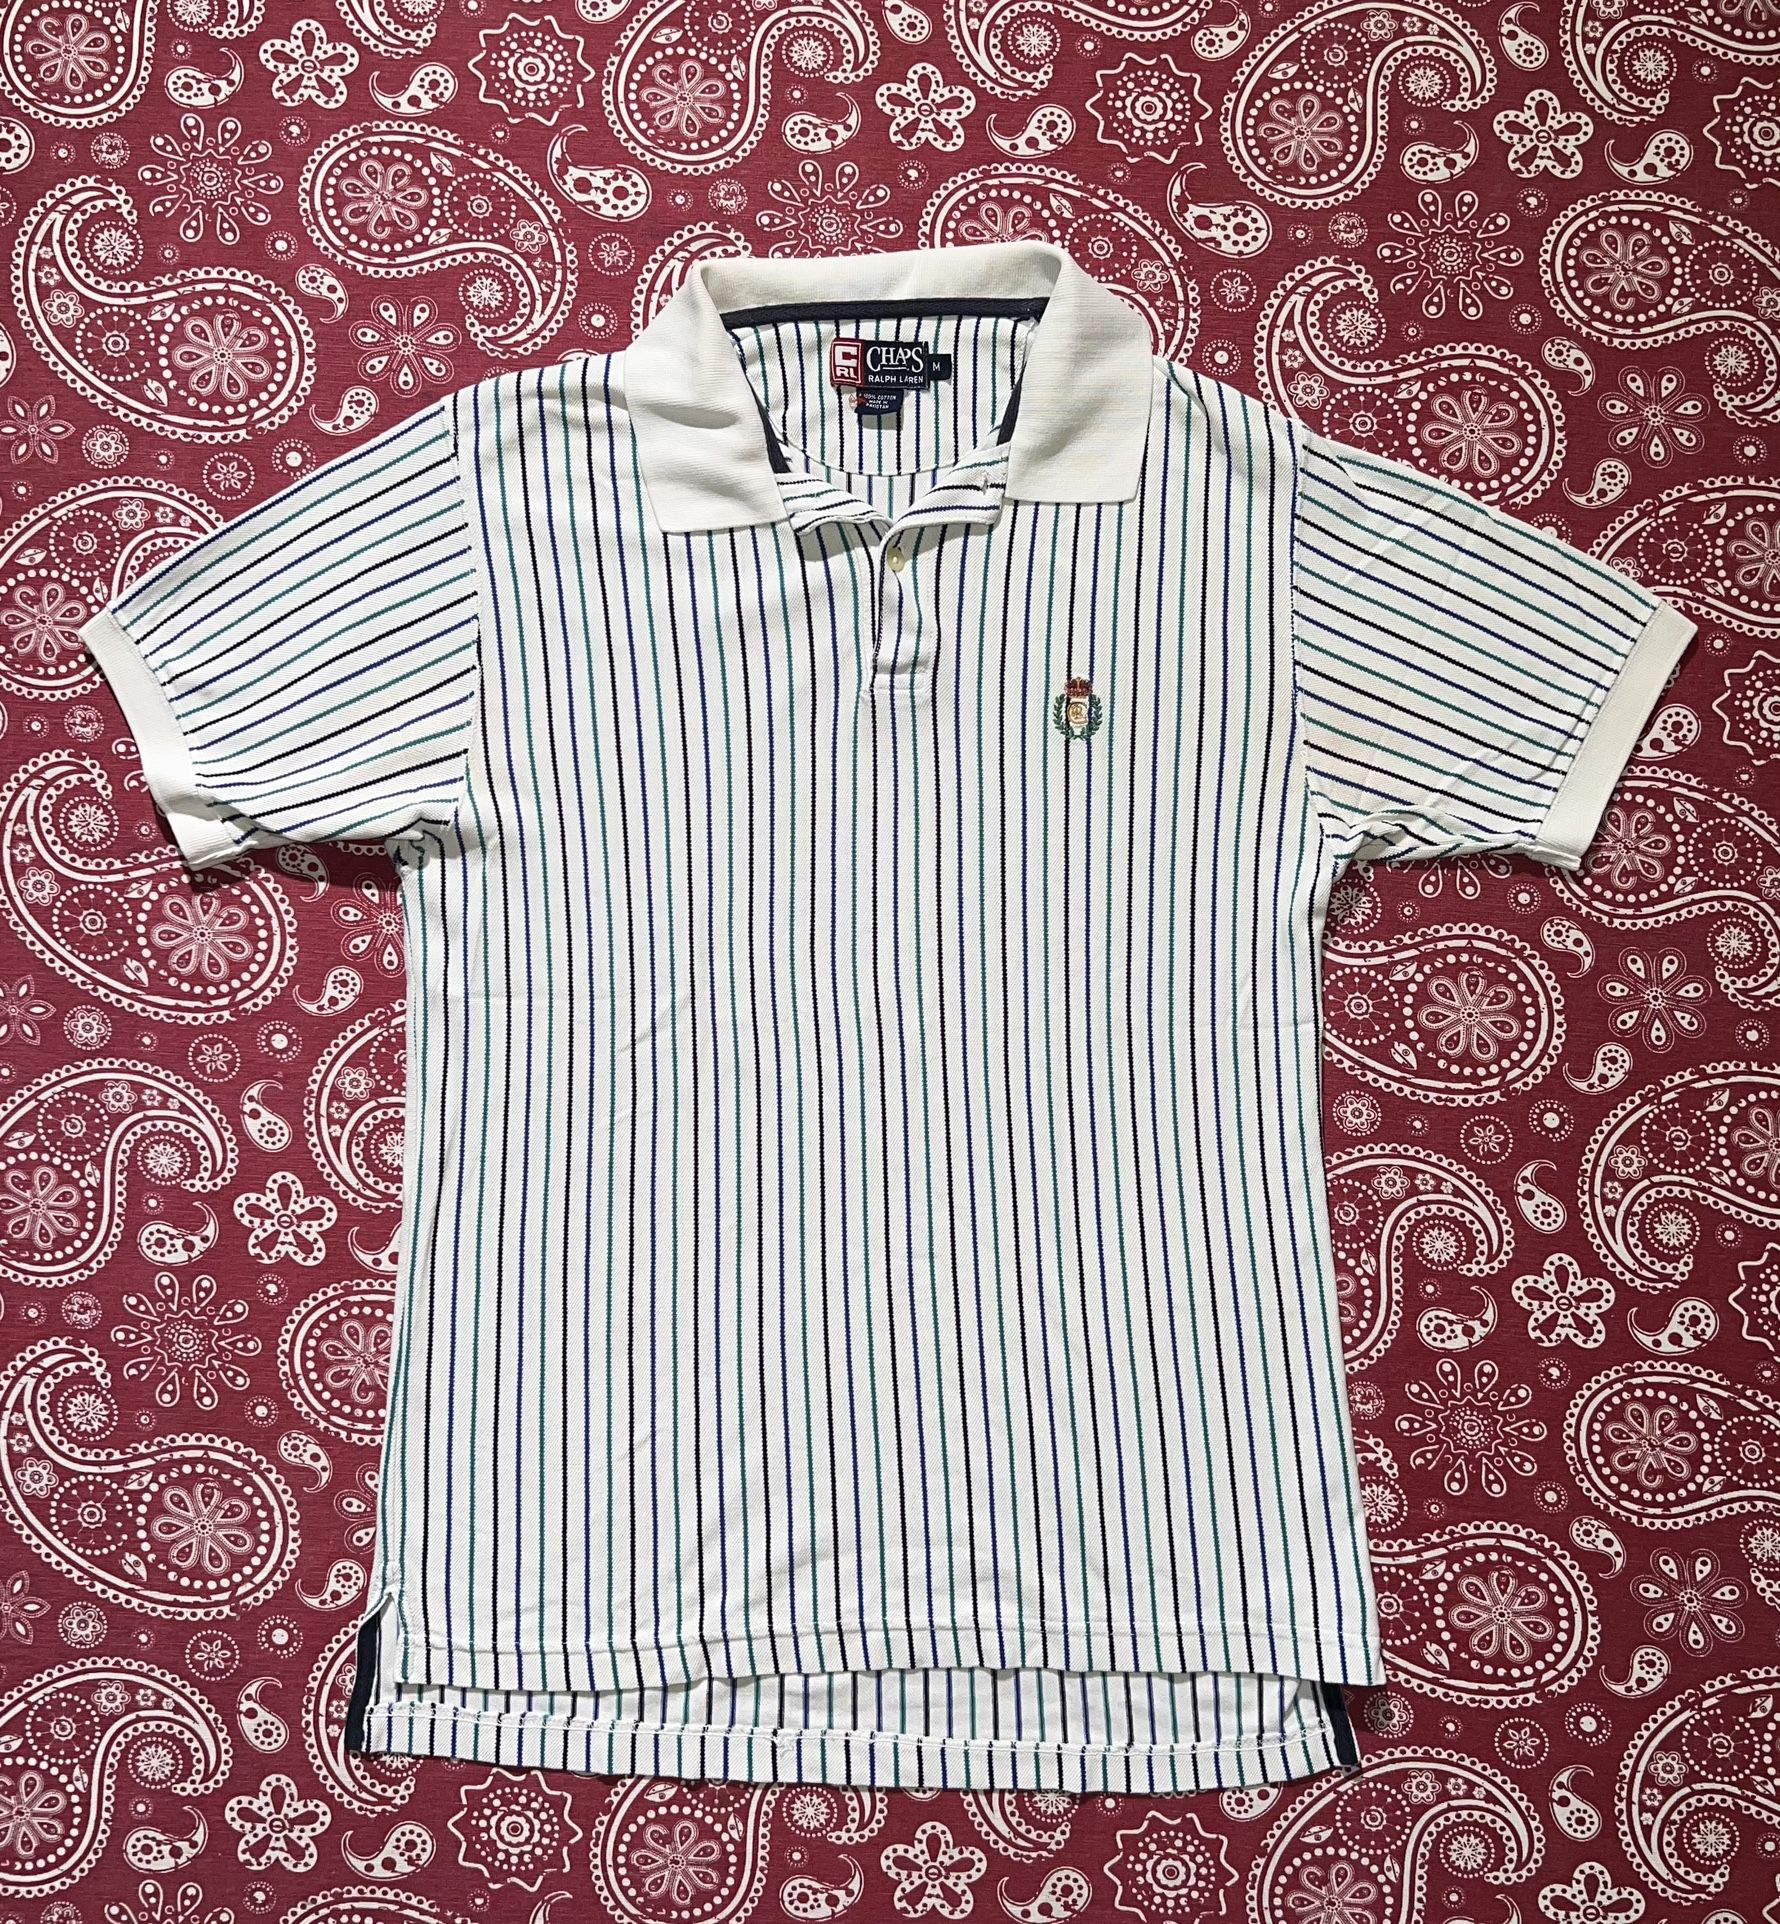 1990 Chaps Ralph Lauren Polo Shirt • M (Length: 25”/ Width: 19”) • $25